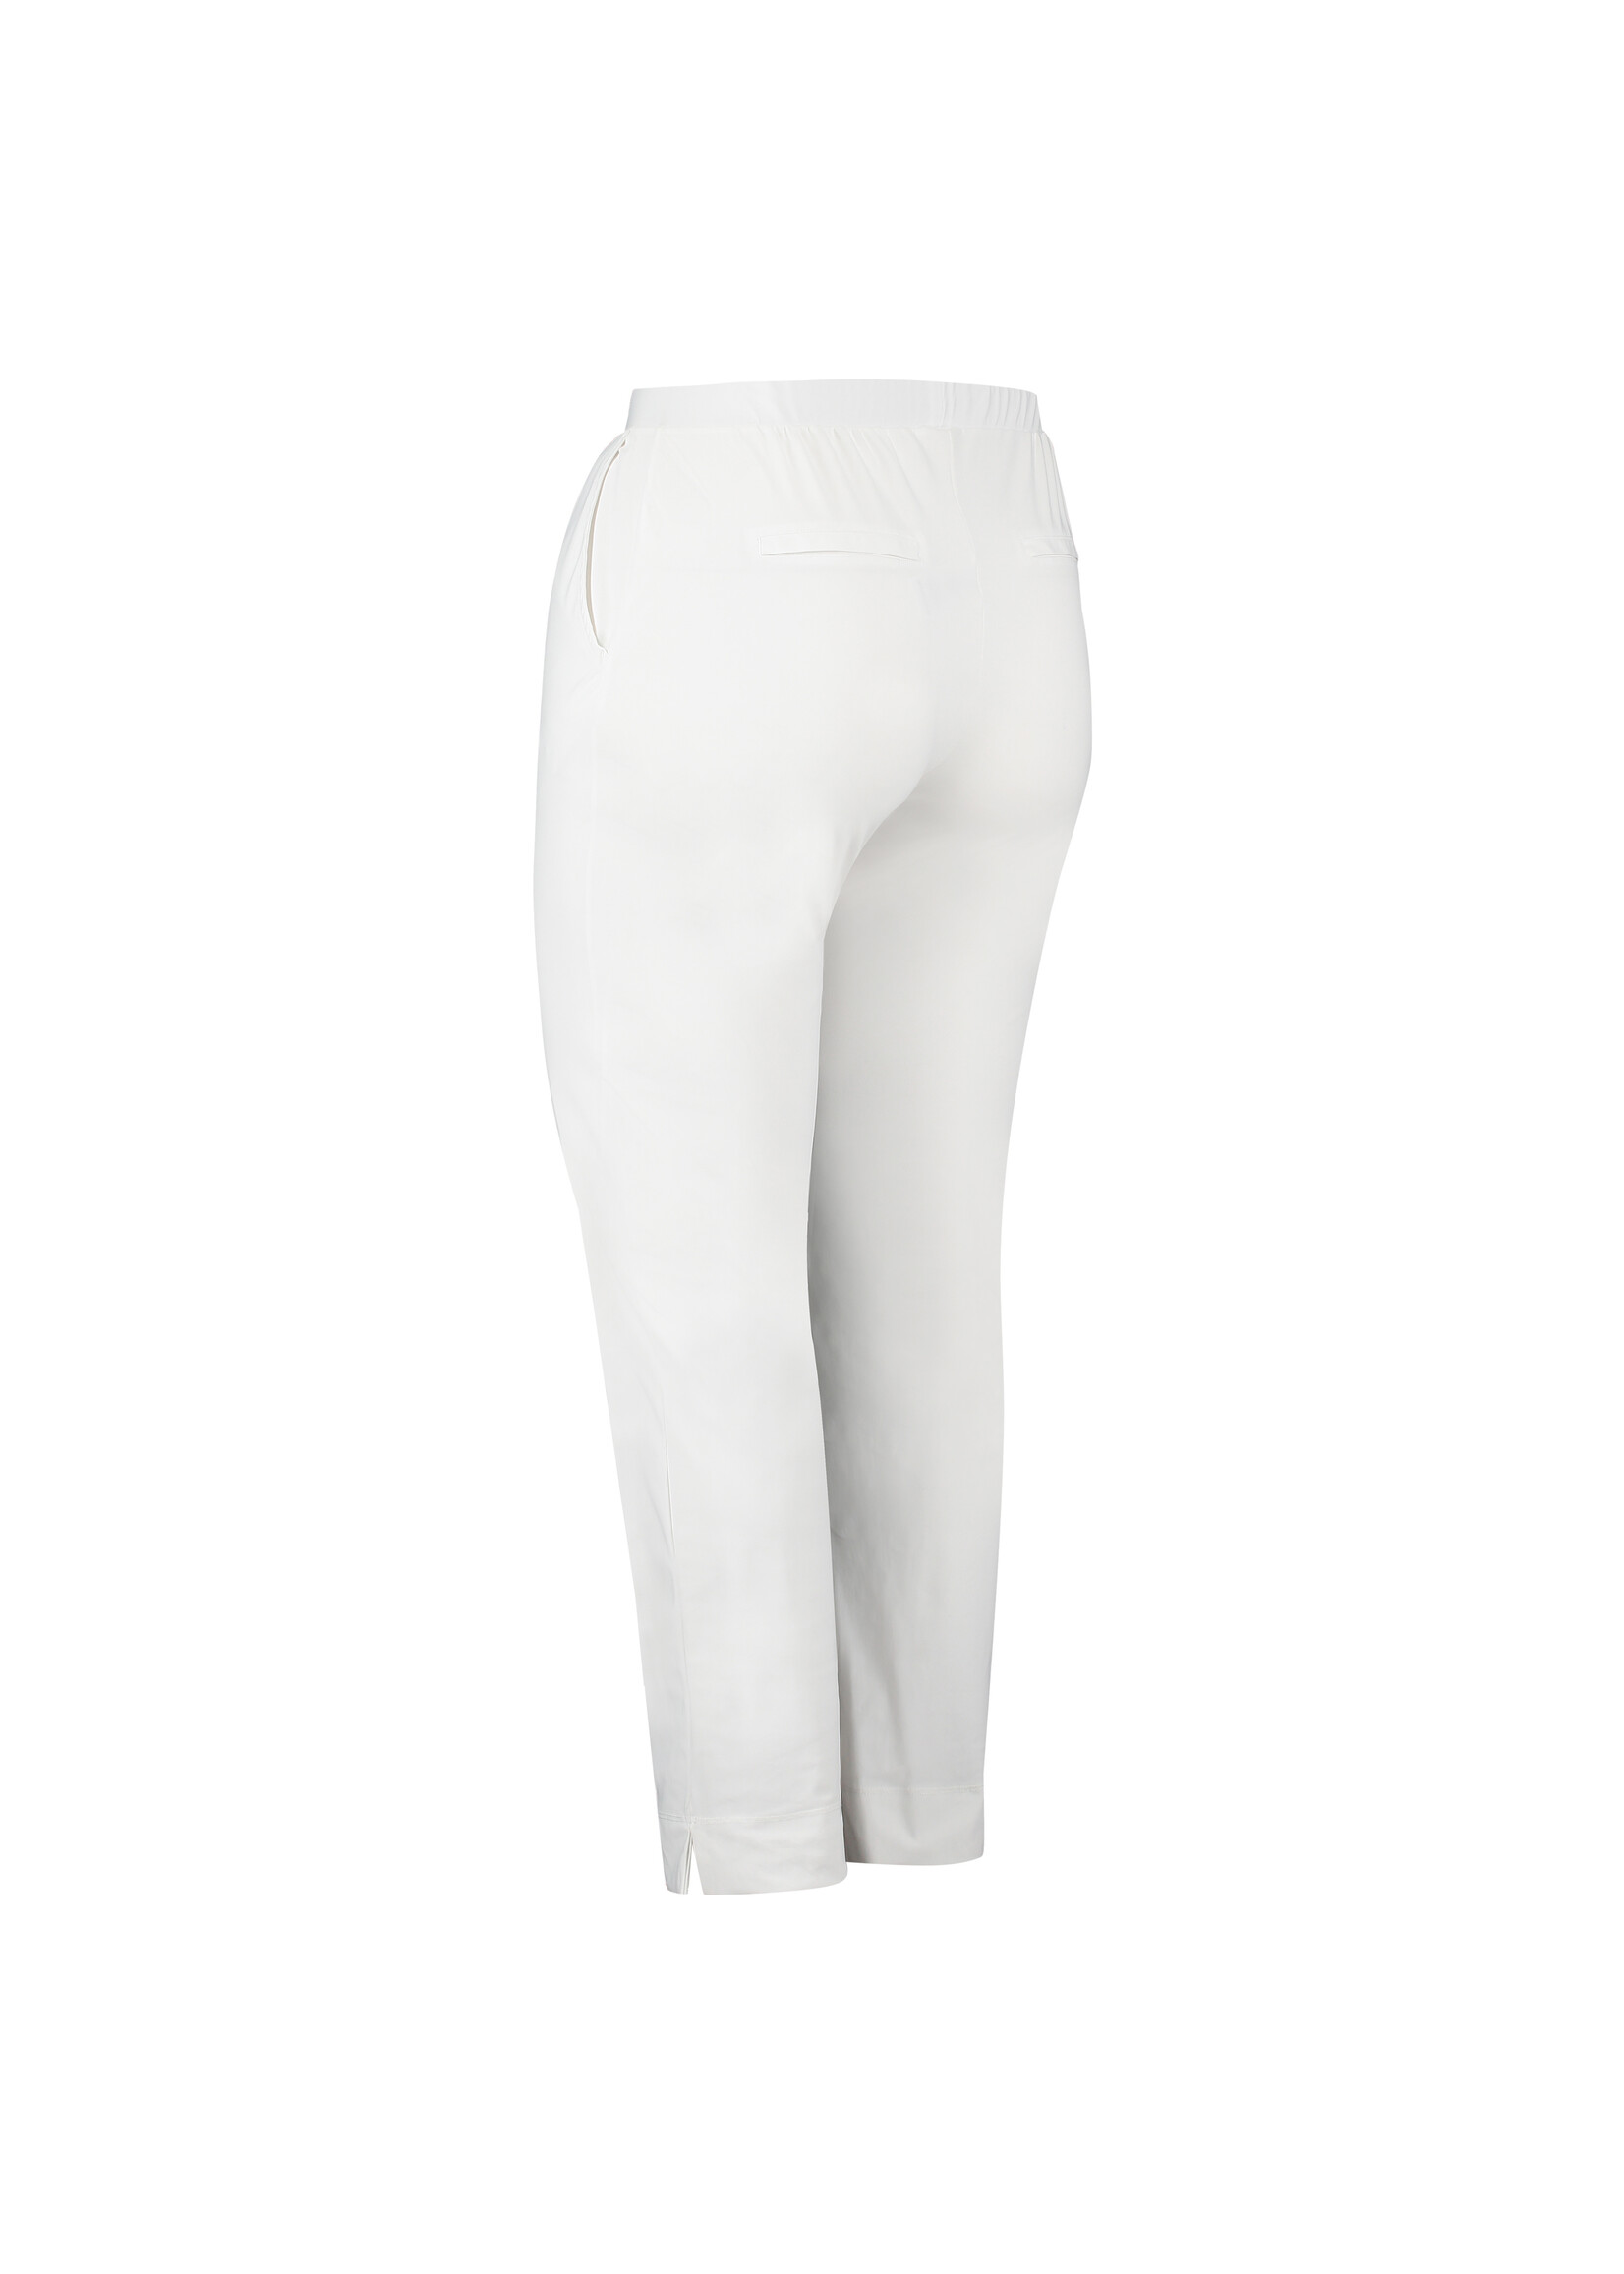 Pants 7/8 White - Boetiek Kijan Shop leukste 40 kleding voor - je hier vanaf maat dames